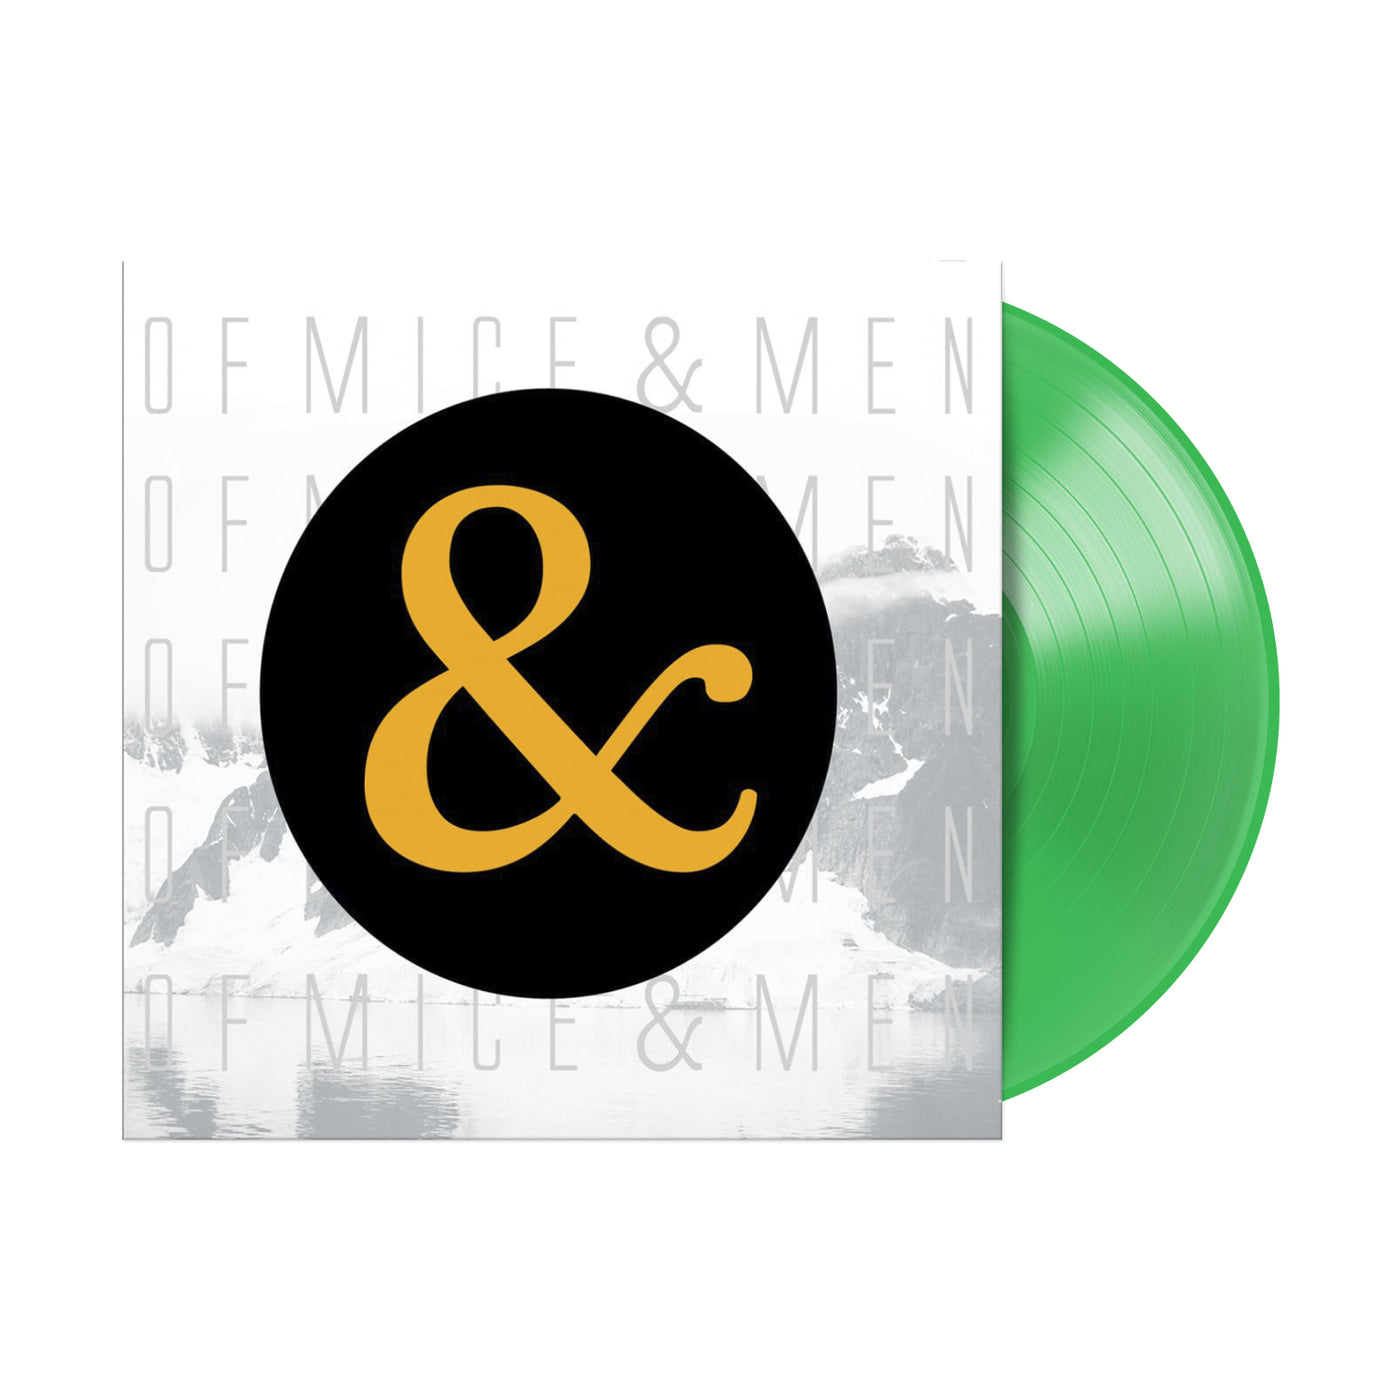 Of Mice & Men Neon Green Vinyl LP